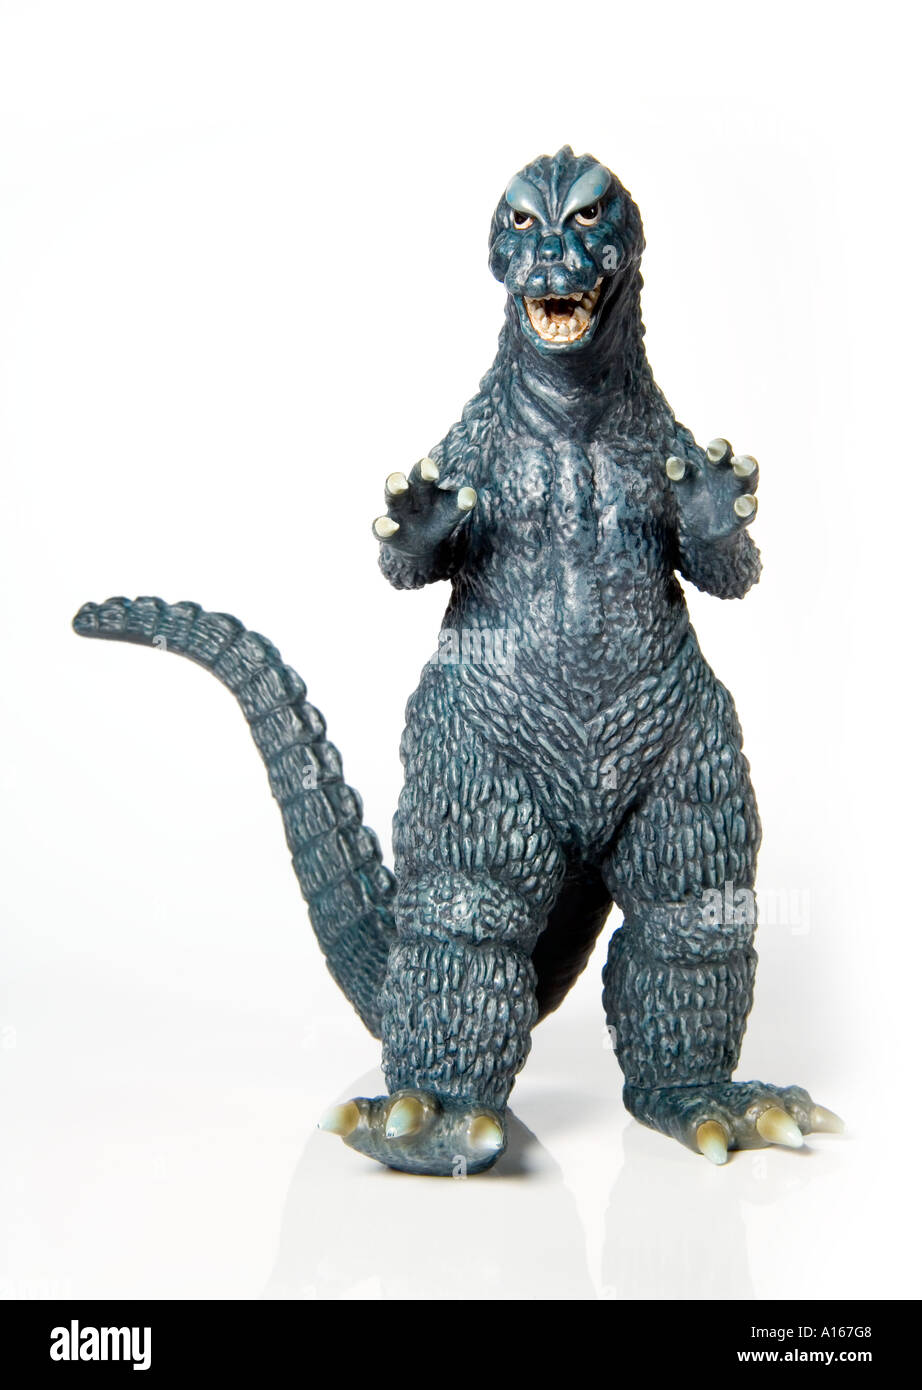 Juguetes de Godzilla Foto de stock